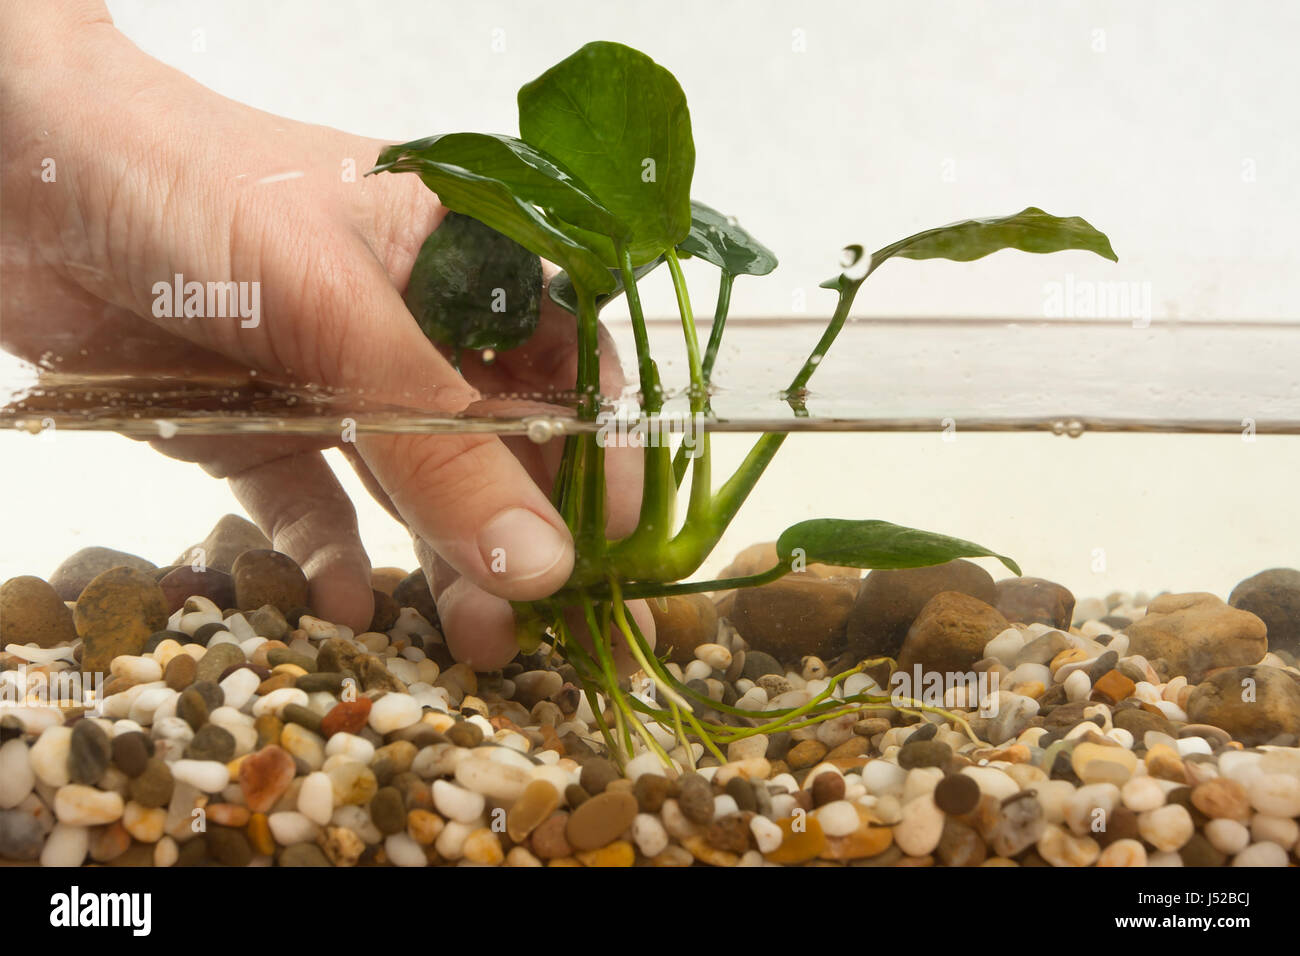 hands of aquarian planting aquatic plant in aquarium Stock Photo